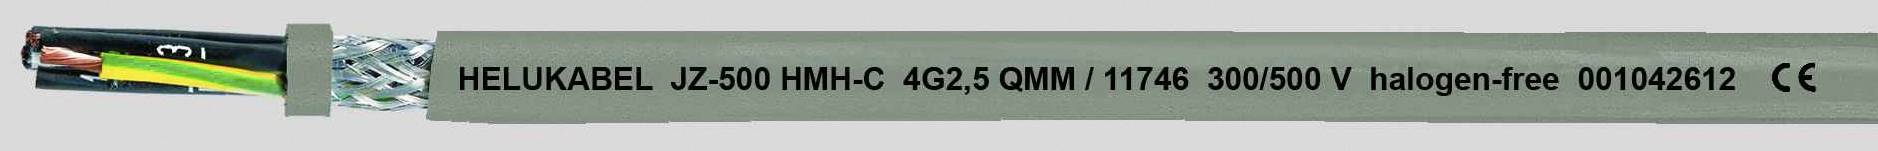 HELUKABEL JZ-500 HMH-C Steuerleitung 5 G 0.75 mm² Grau 11681-500 500 m